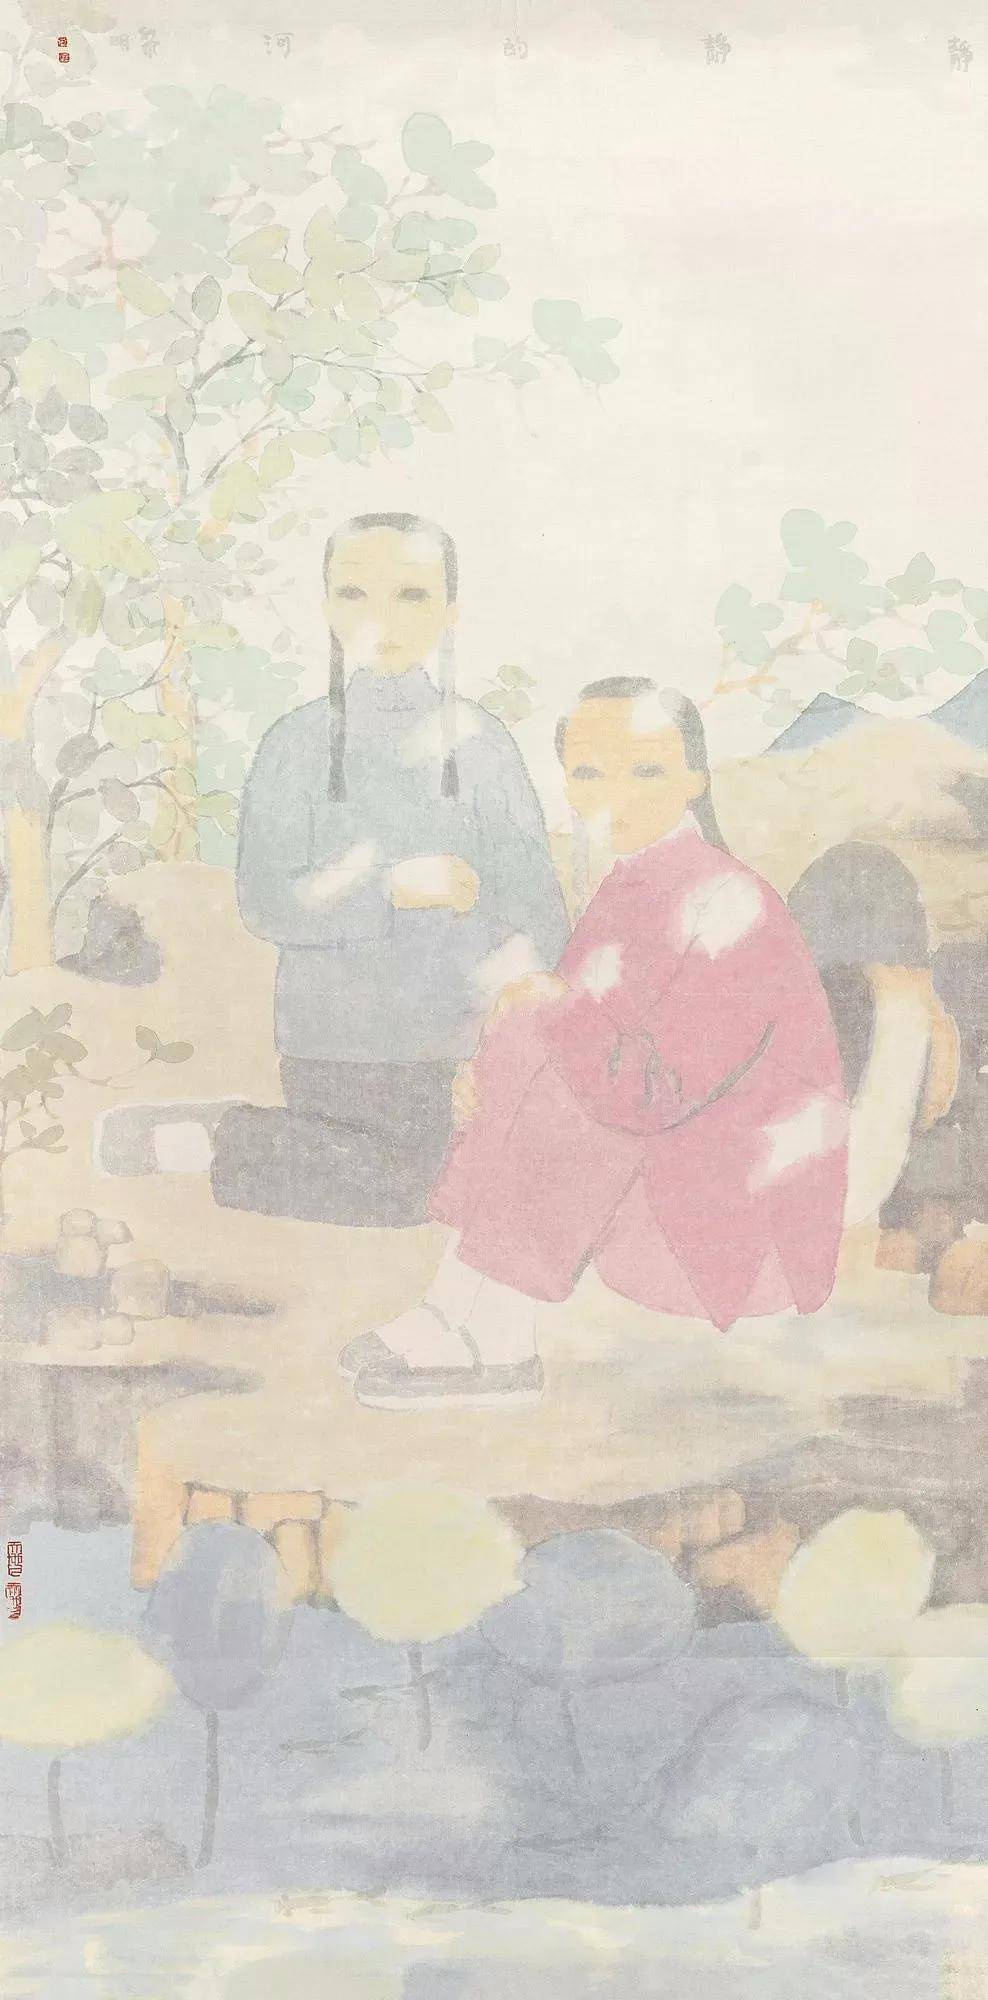 第1458期:田黎明 ——2019年最高成交价前10幅作品,中国画家拍卖成交